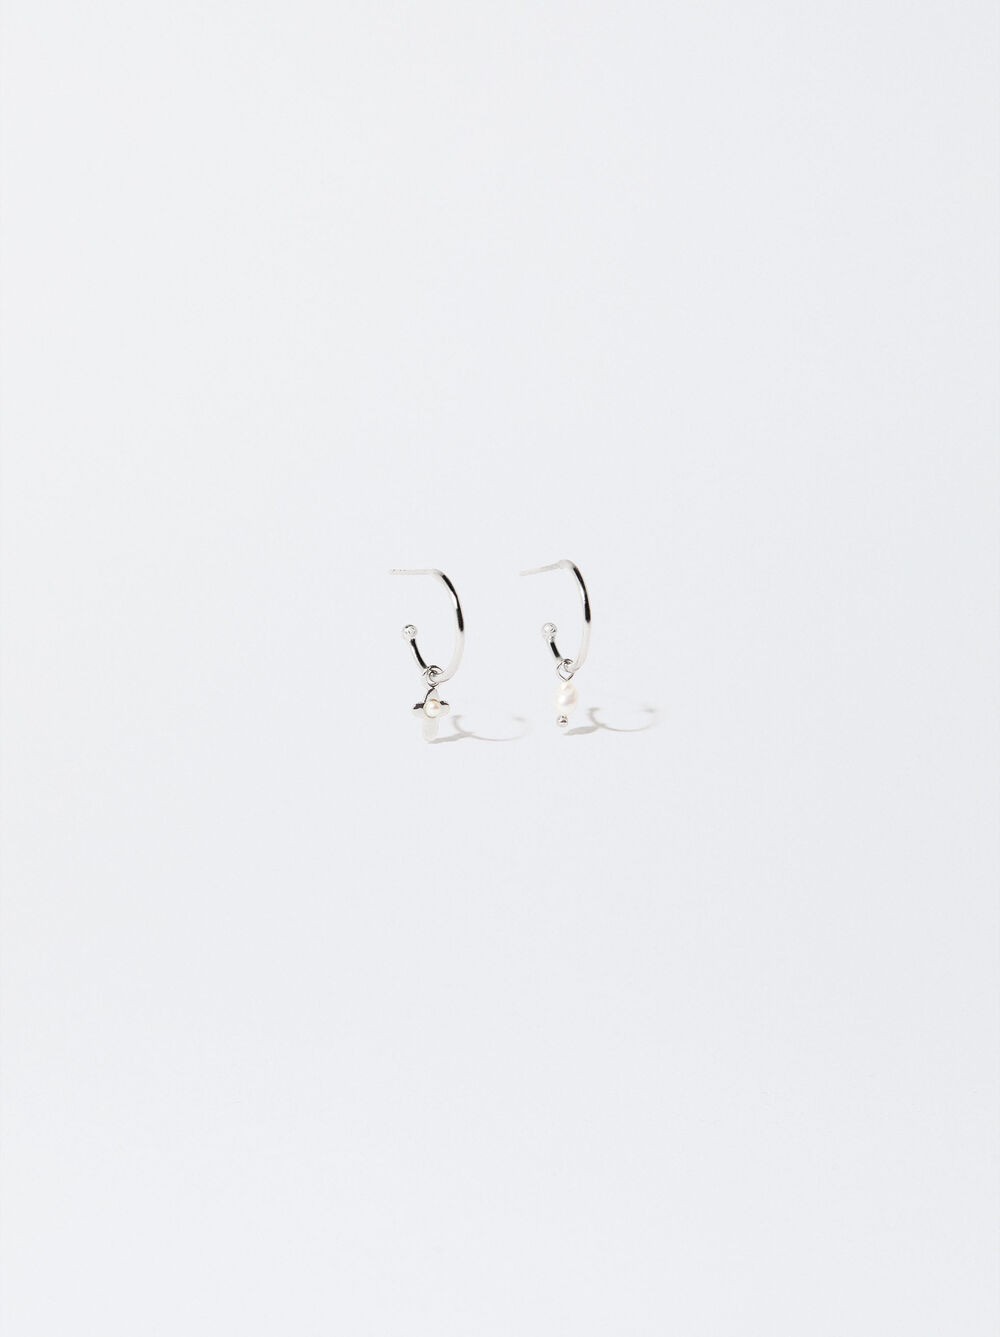 925 Silver Hoop Earrings With Freshwater Pearls